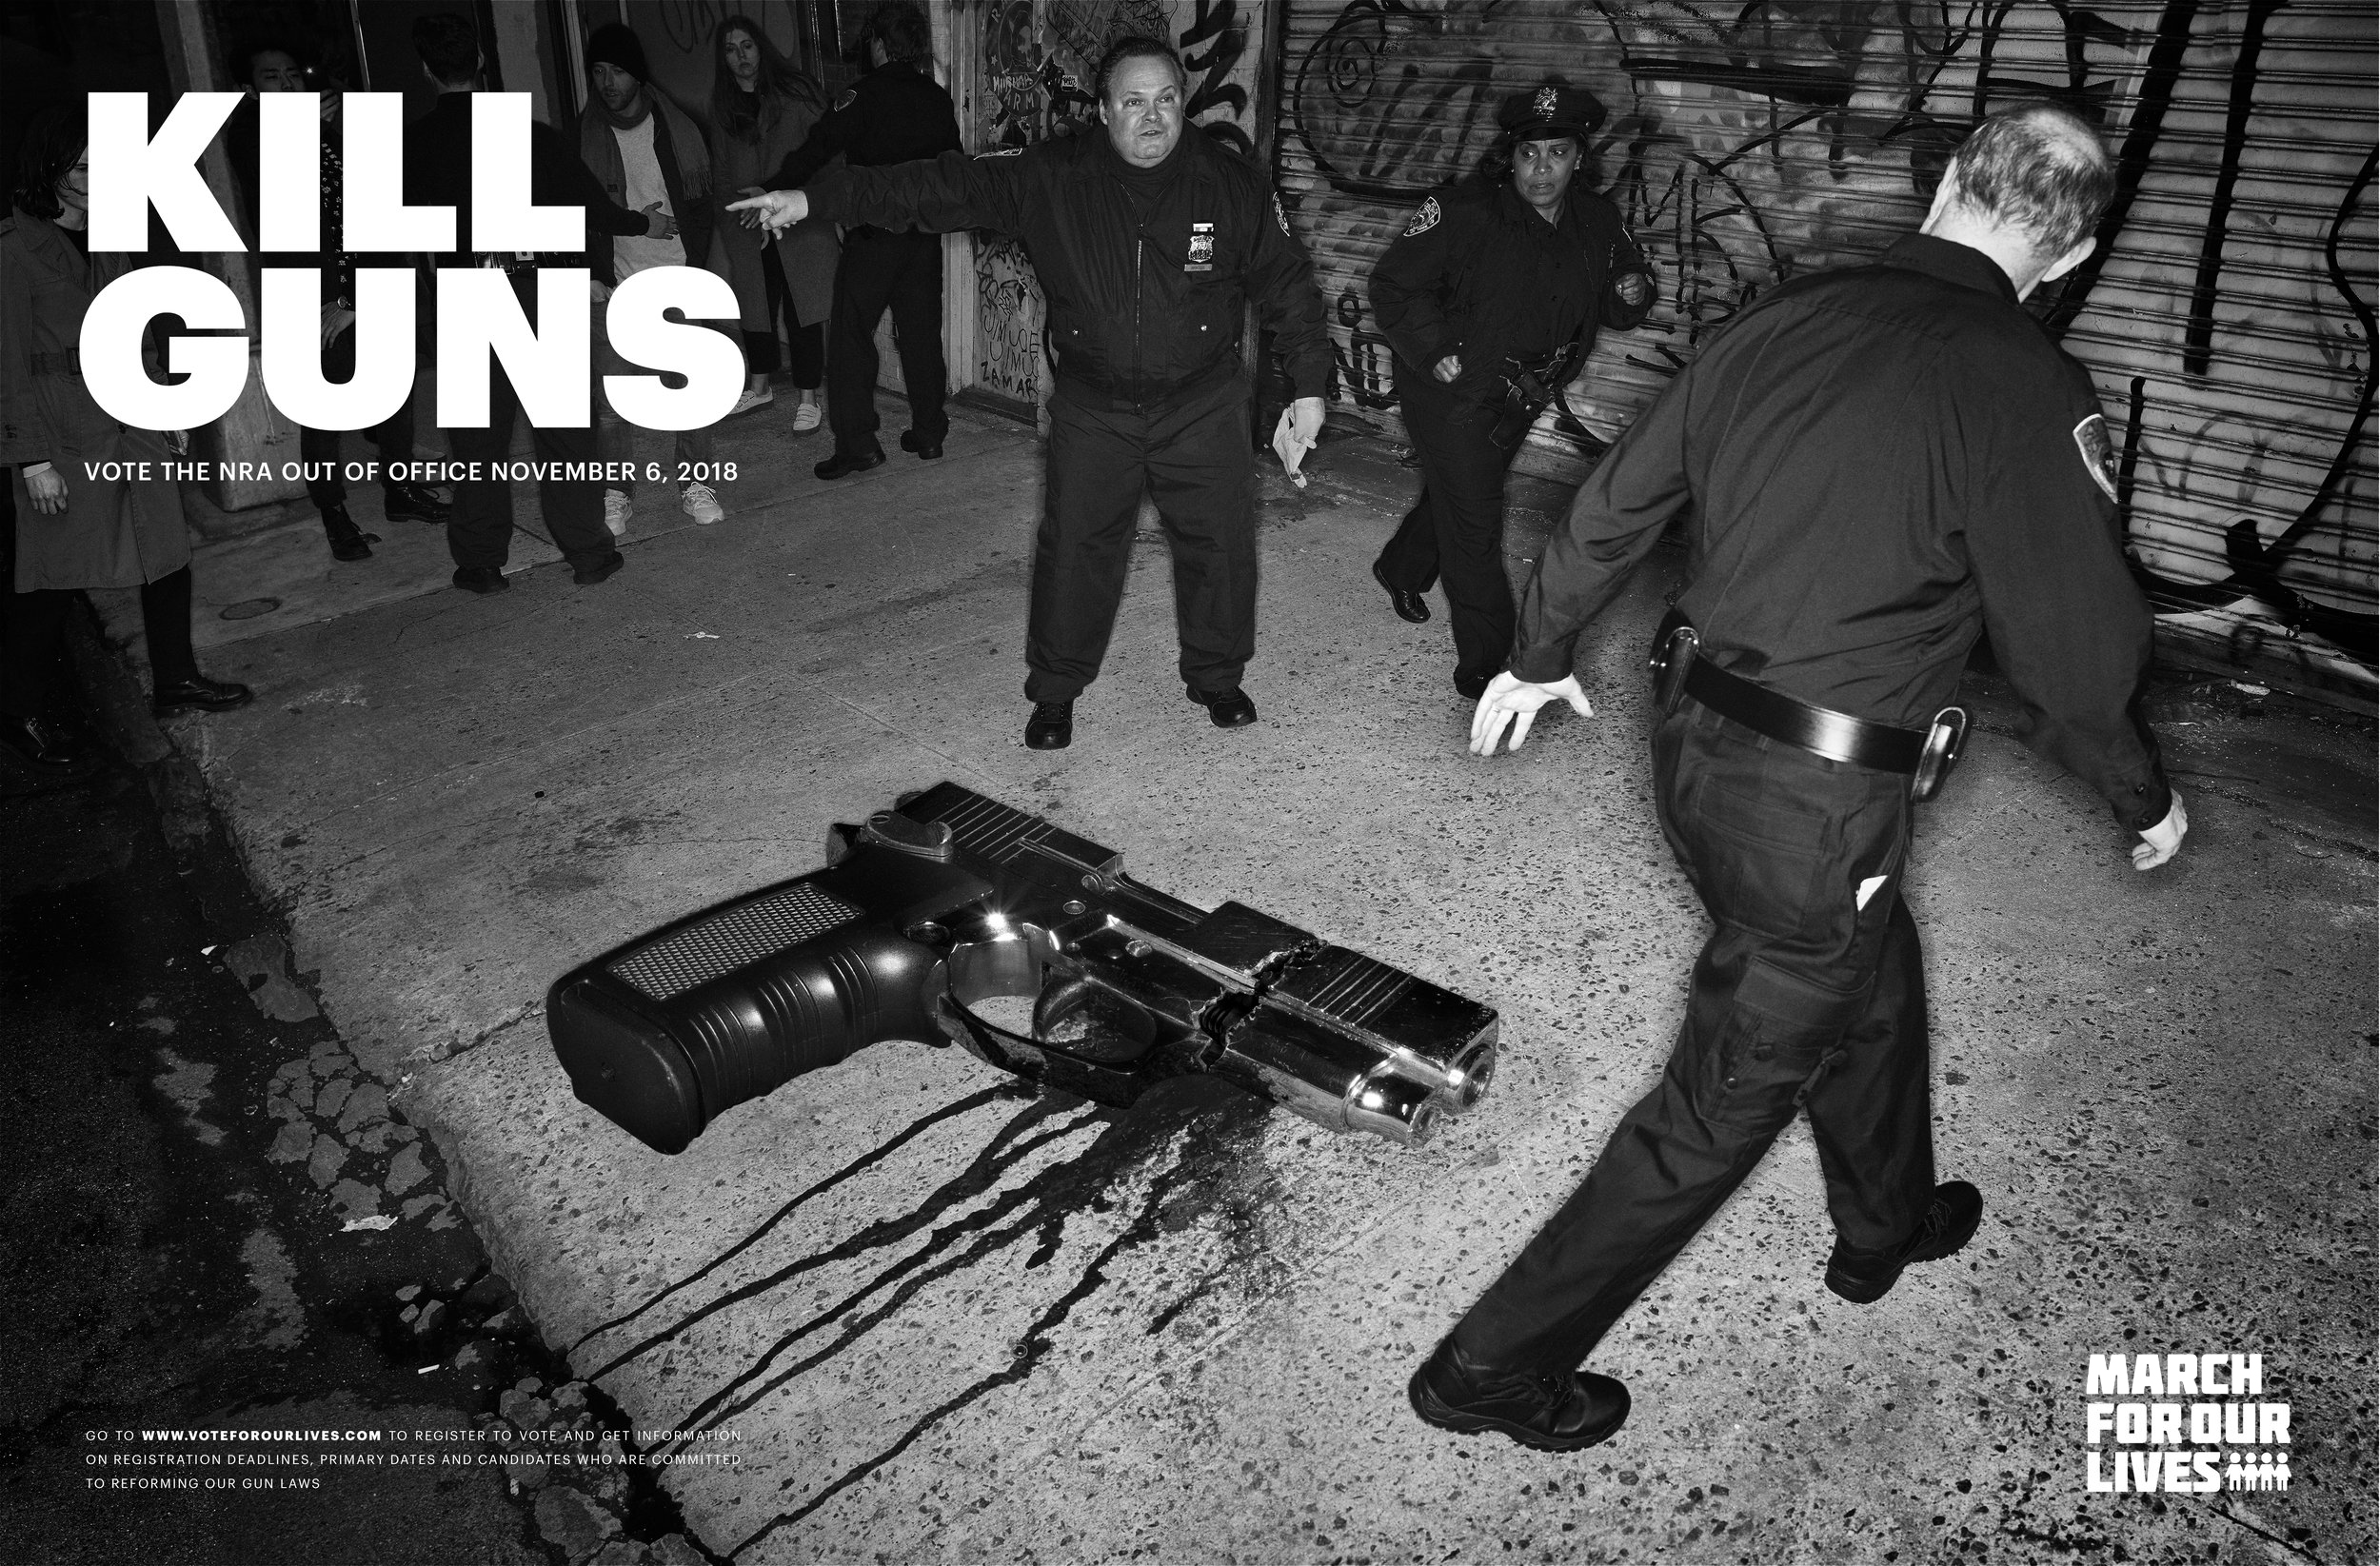 Kill guns